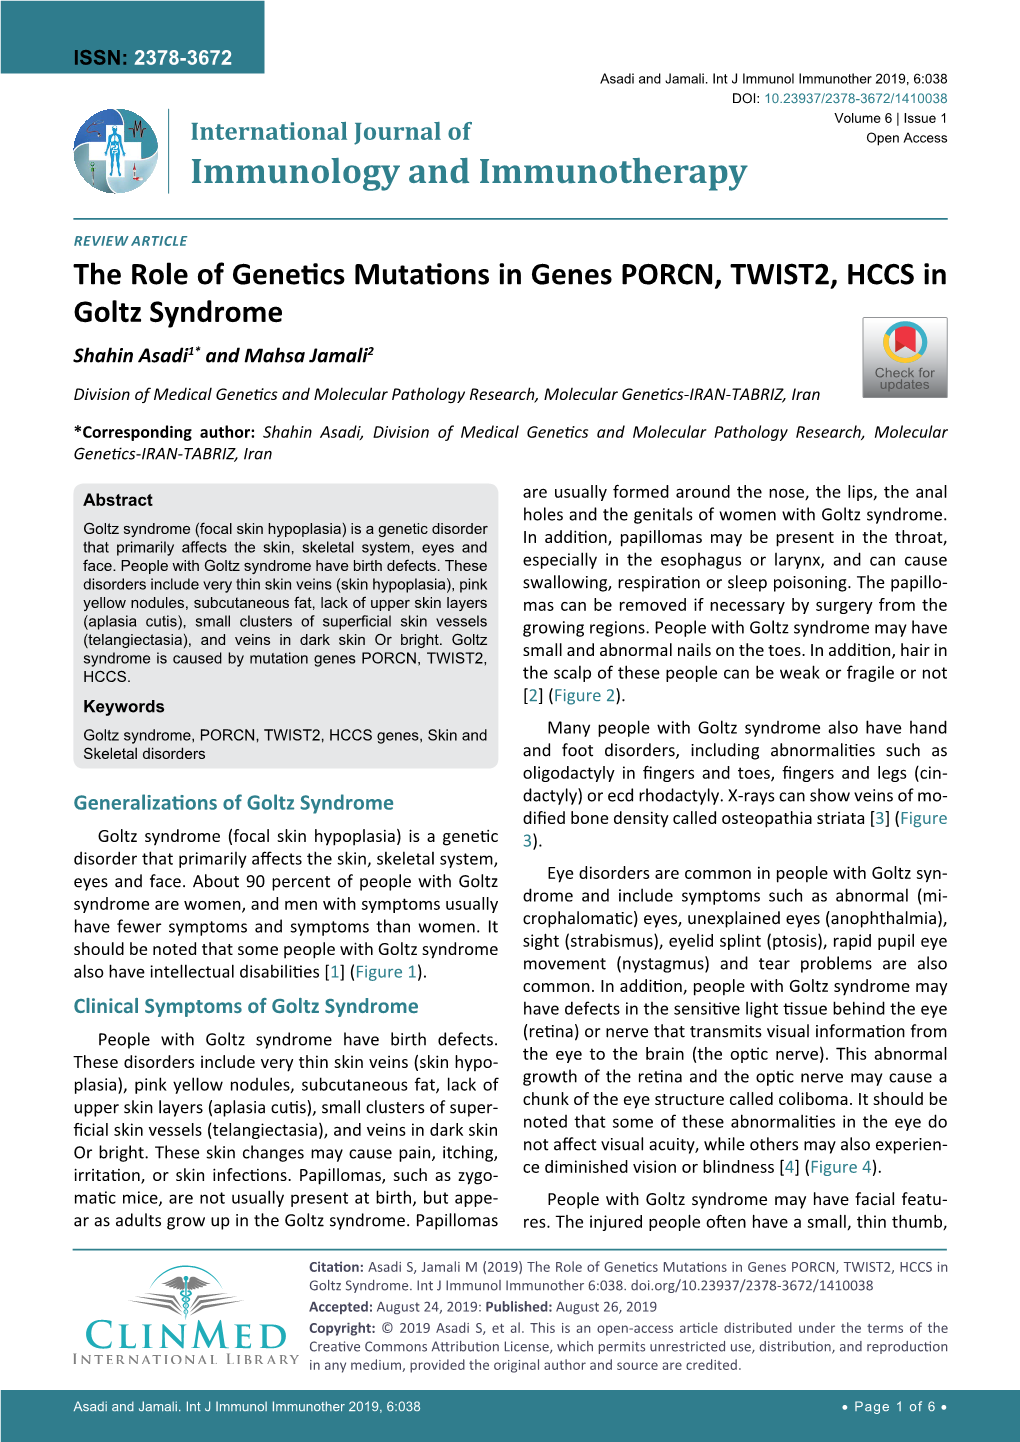 The Role of Genetics Mutations in Genes PORCN, TWIST2, HCCS In